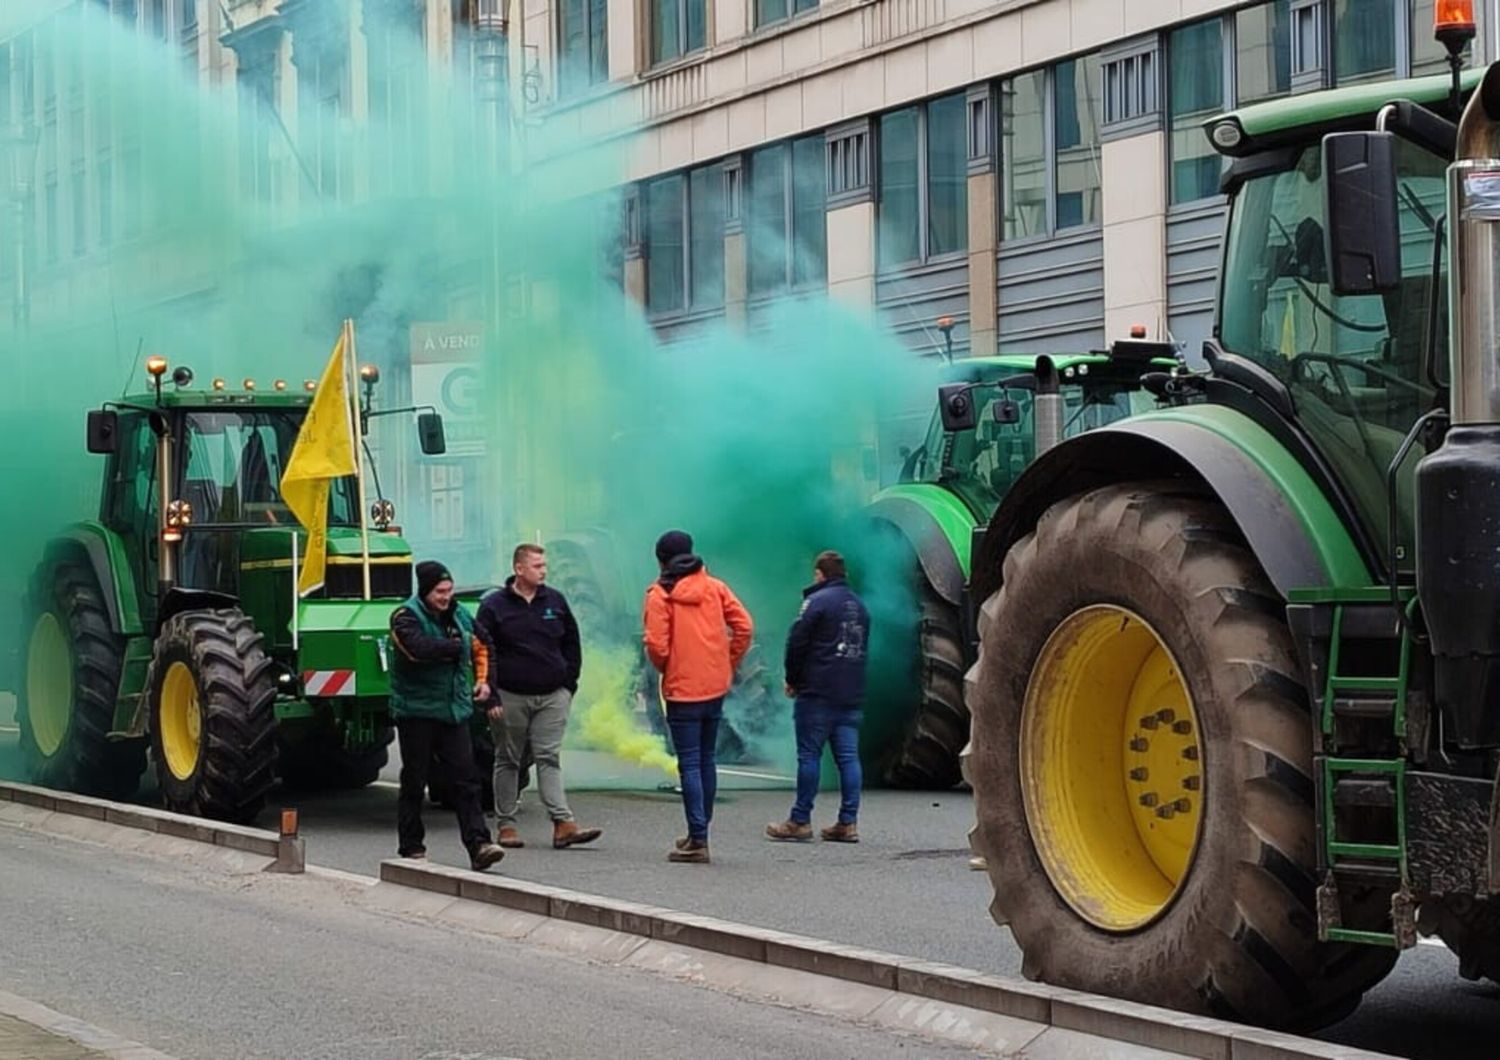 protesta trattori torna a bruxelles